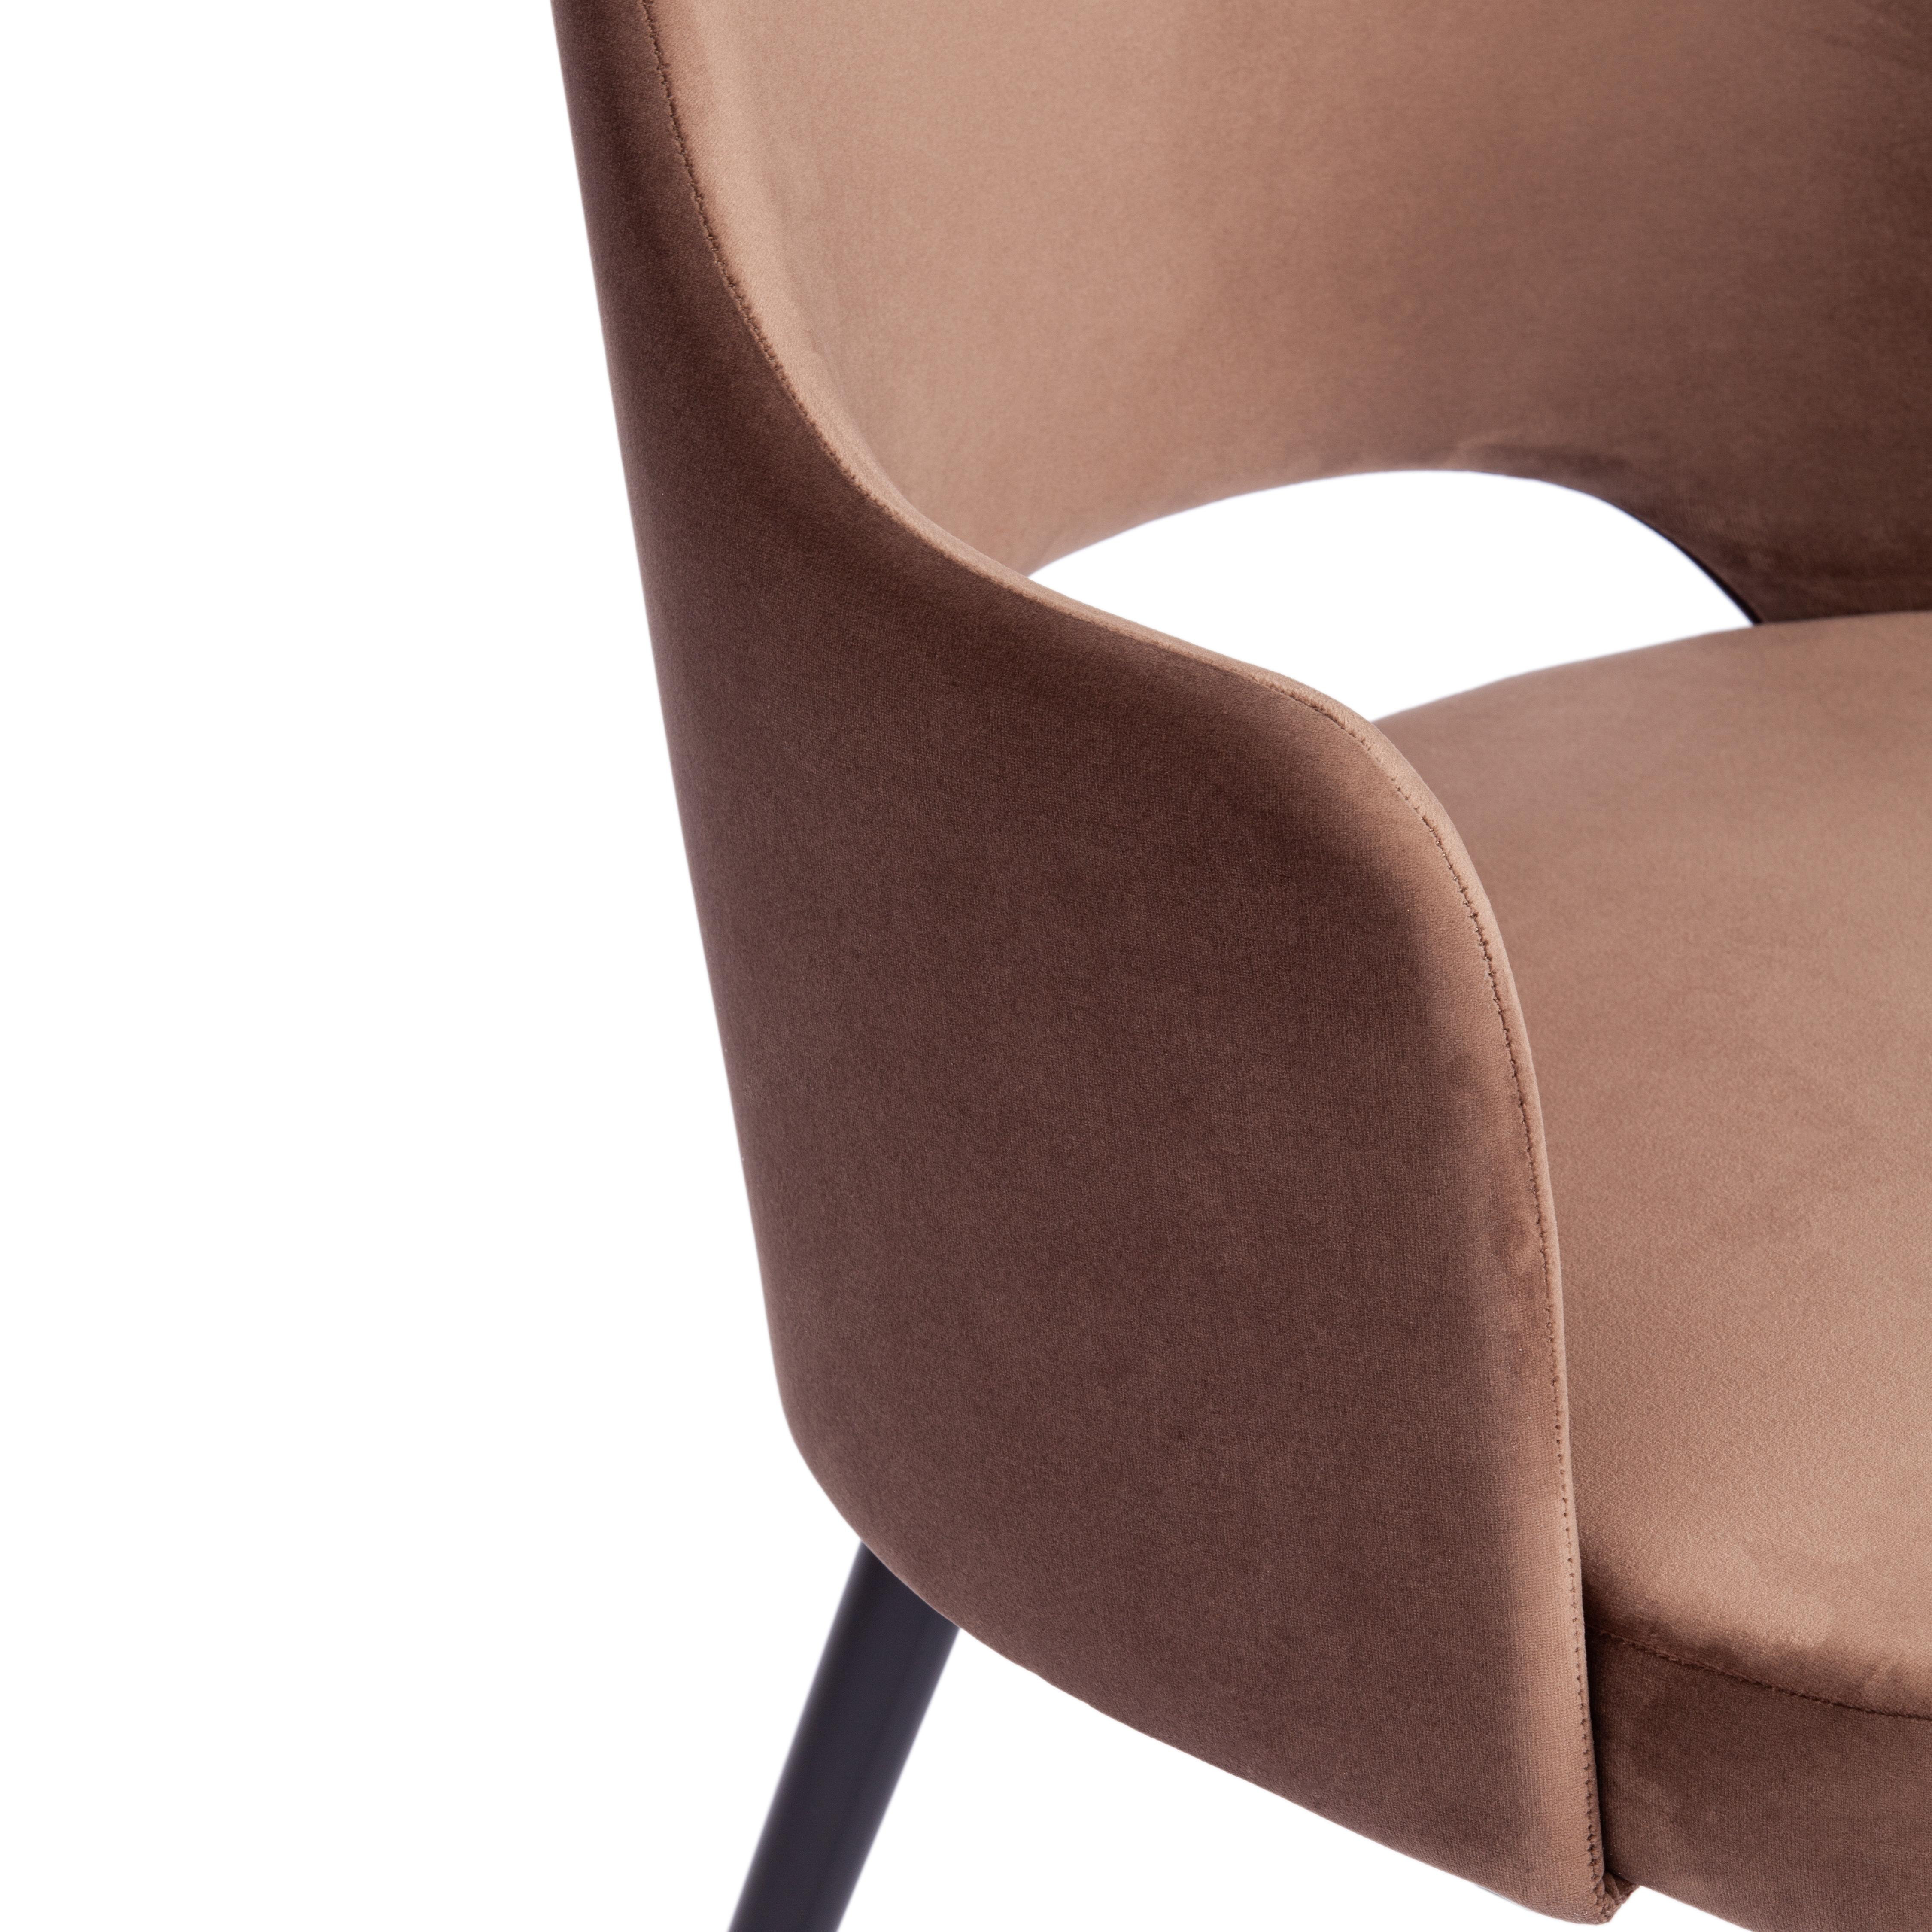 Кресло VALKYRIA 2 (mod. 718) ткань/металл, 55х55х80 см, высота до сиденья 48 см, коричневый barkhat 12/черный